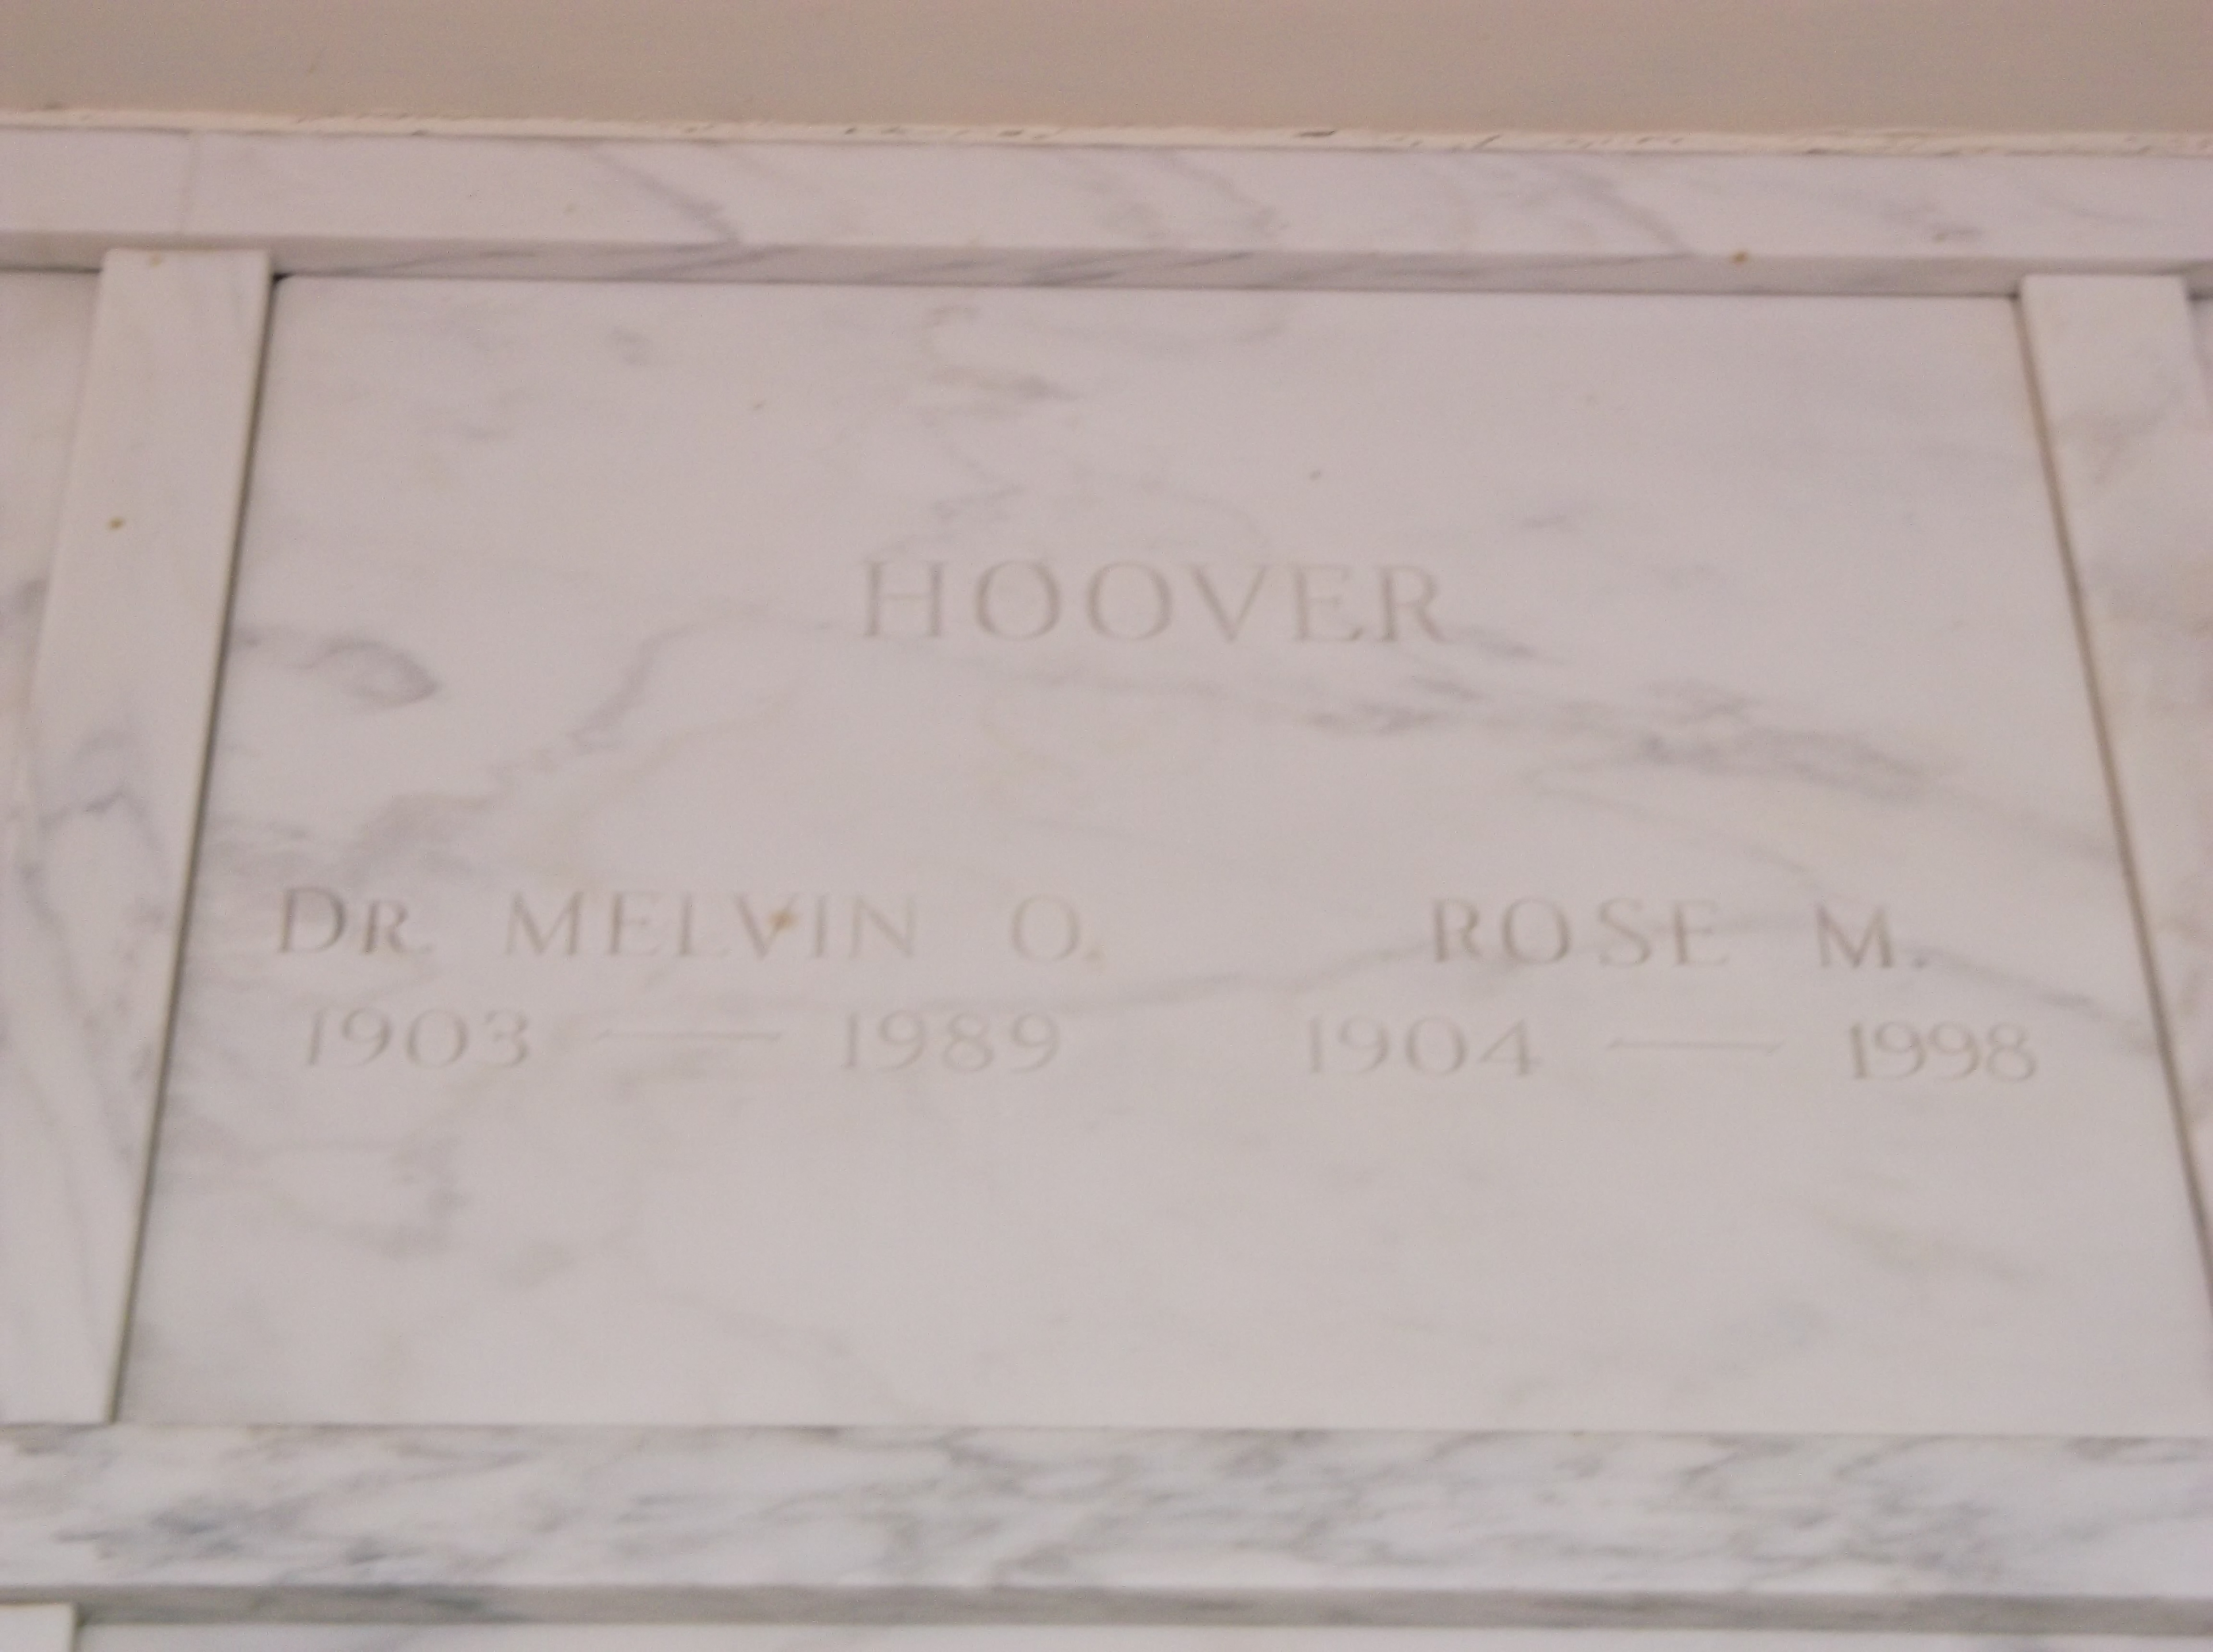 Rose M Hoover